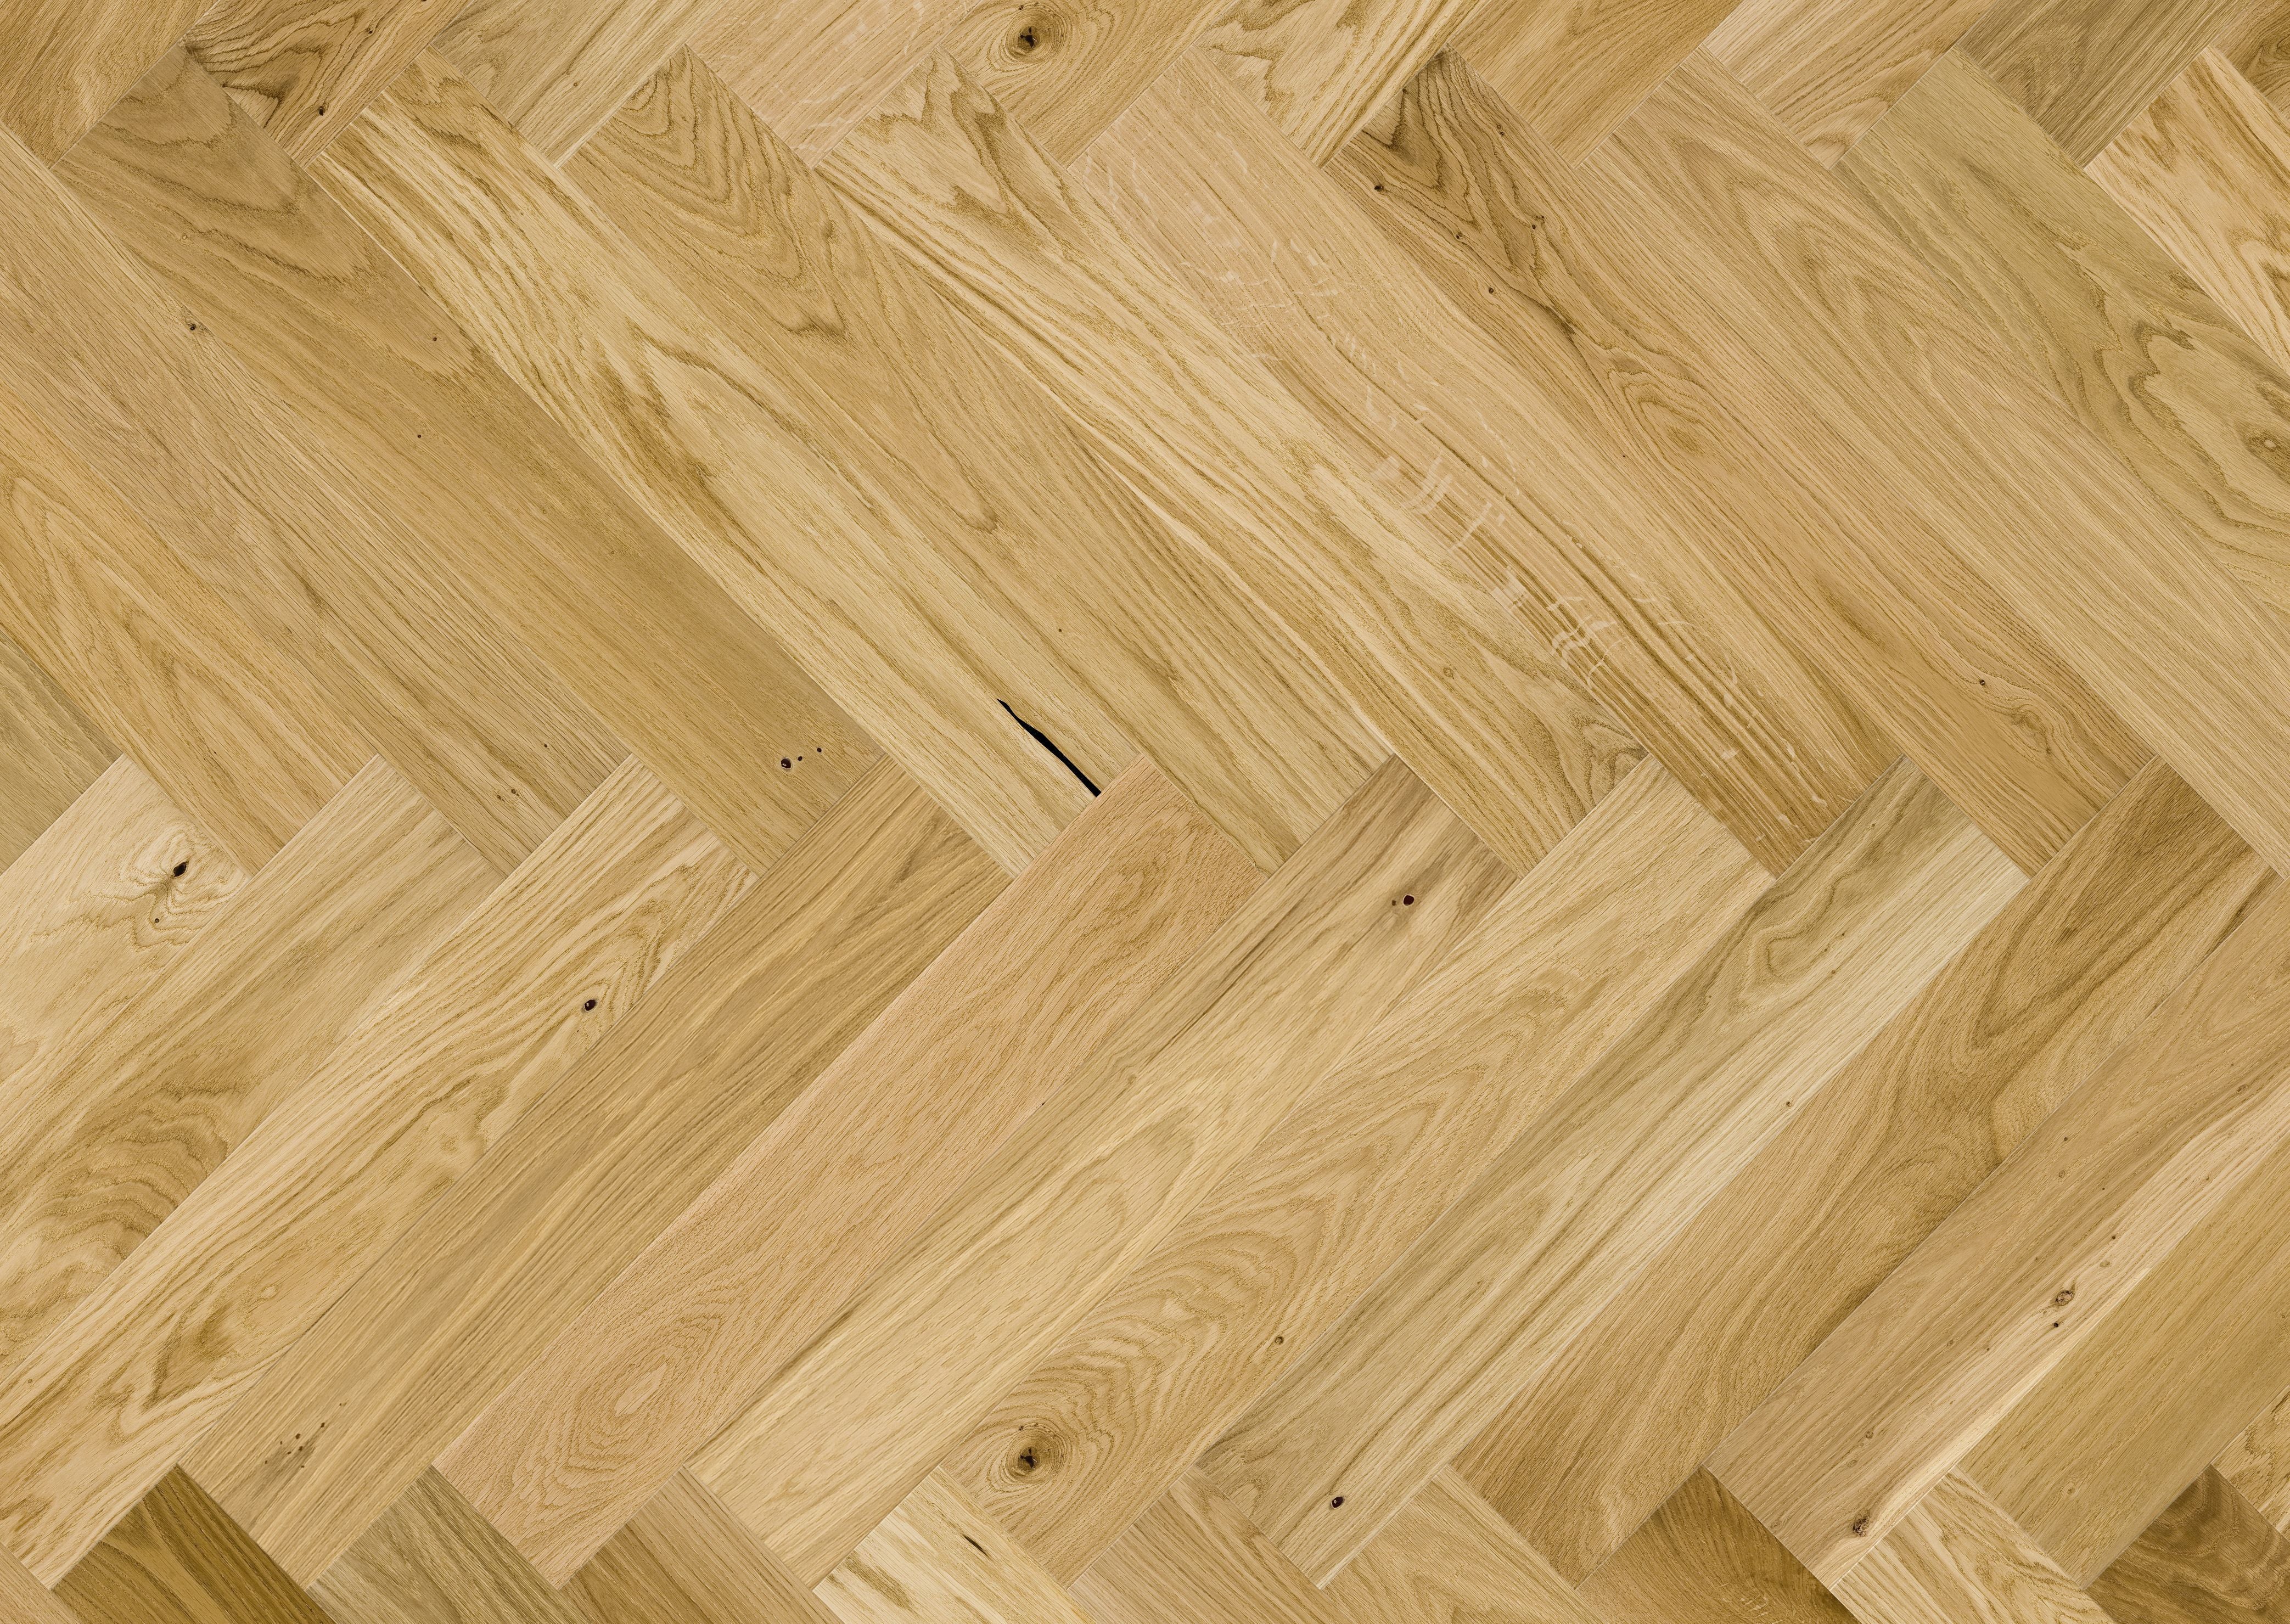 Natural wood flooring laid in herringbone pattern